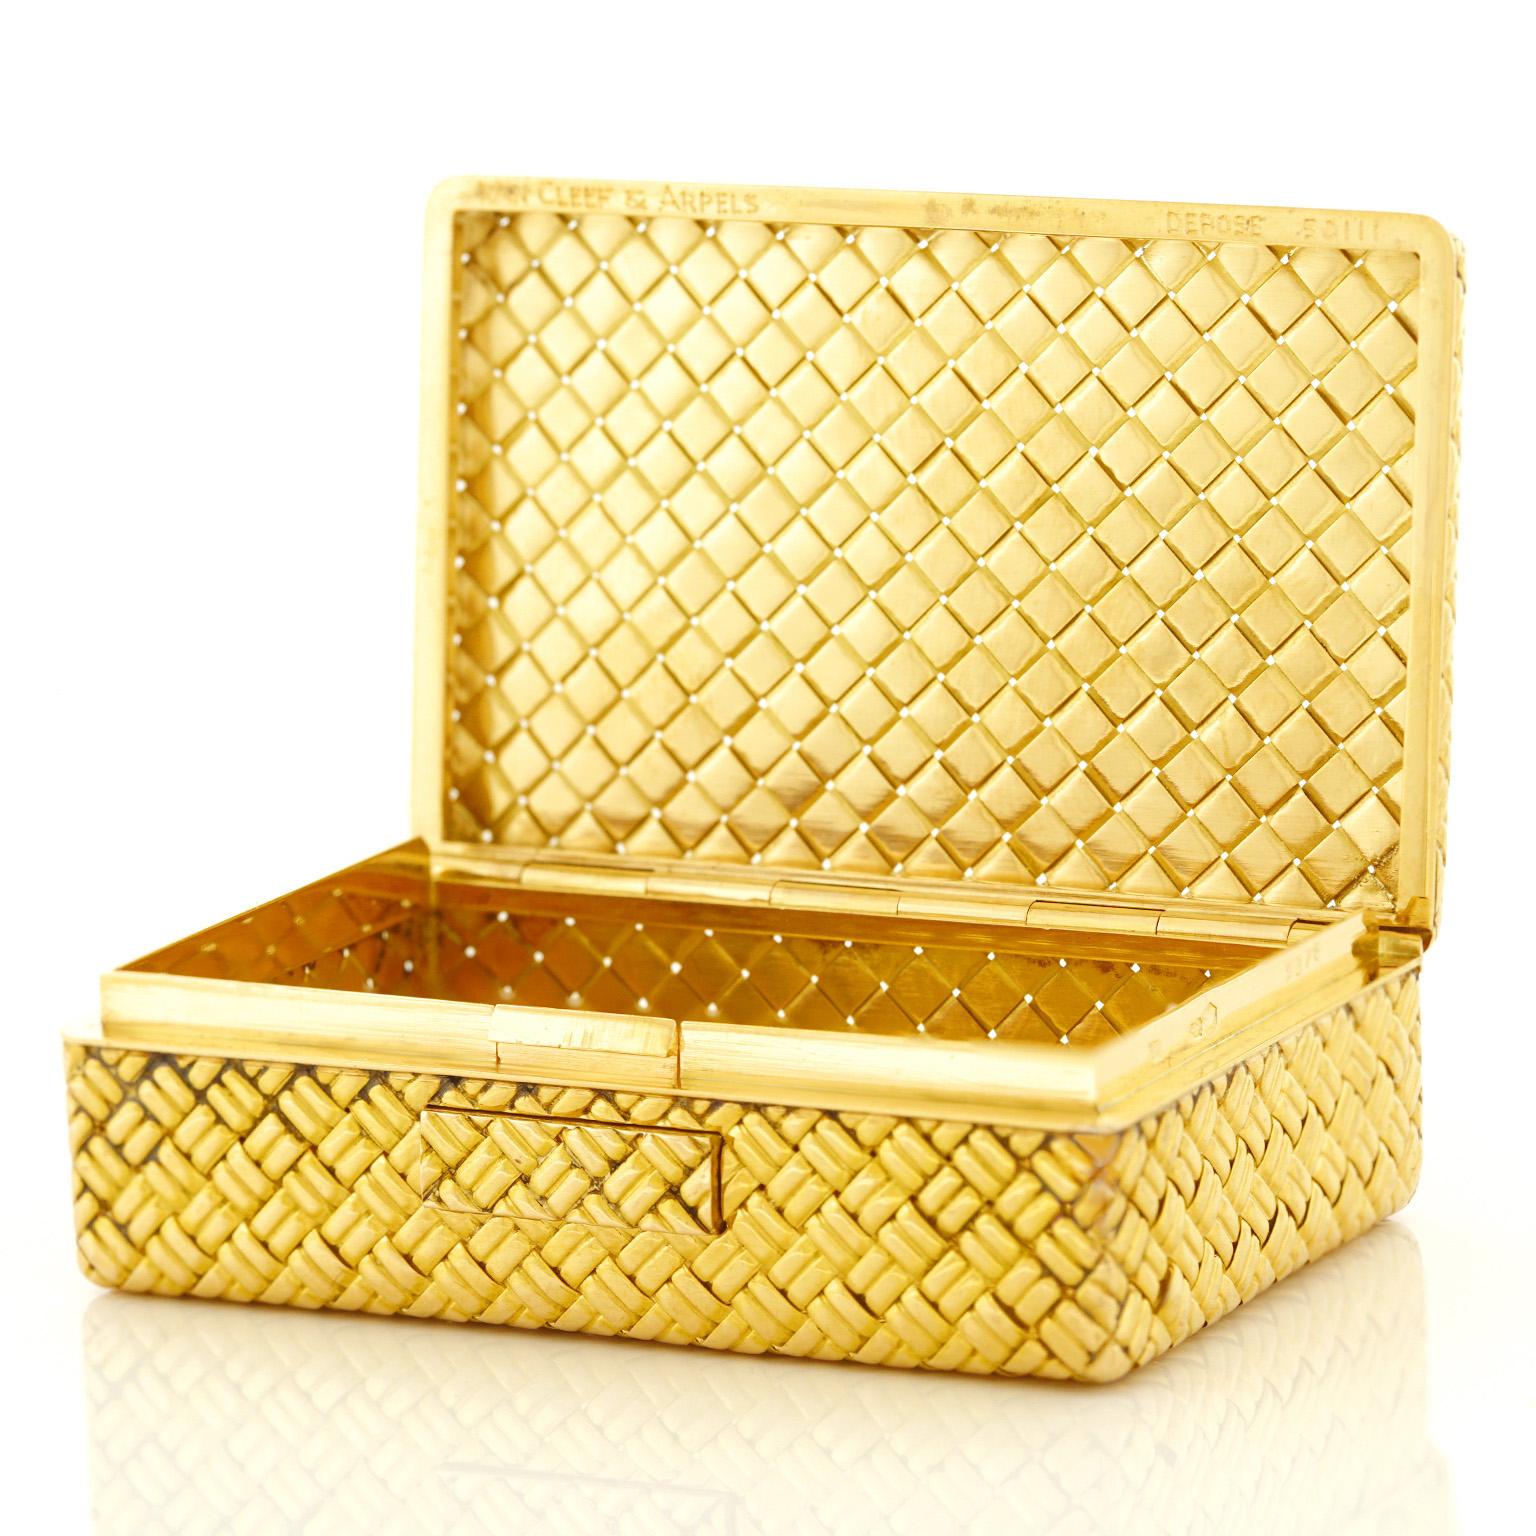 American Van Cleef & Arpels Gold Box